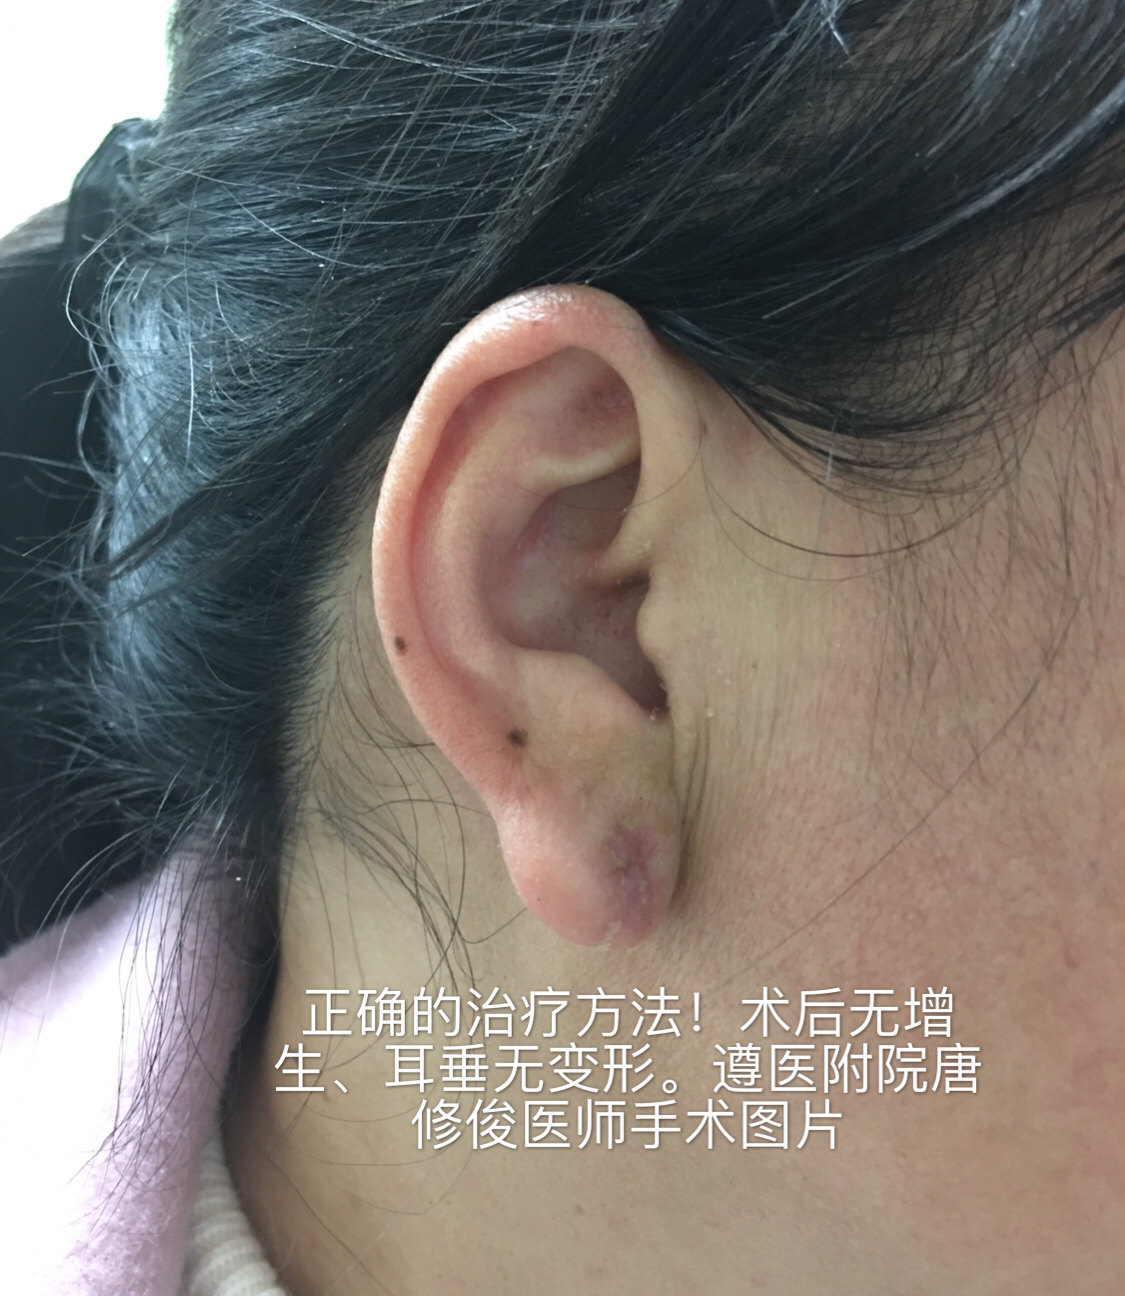 手术一定不能破坏瘢痕外皮,内核要切除干净,不能破坏耳朵亚单位,及